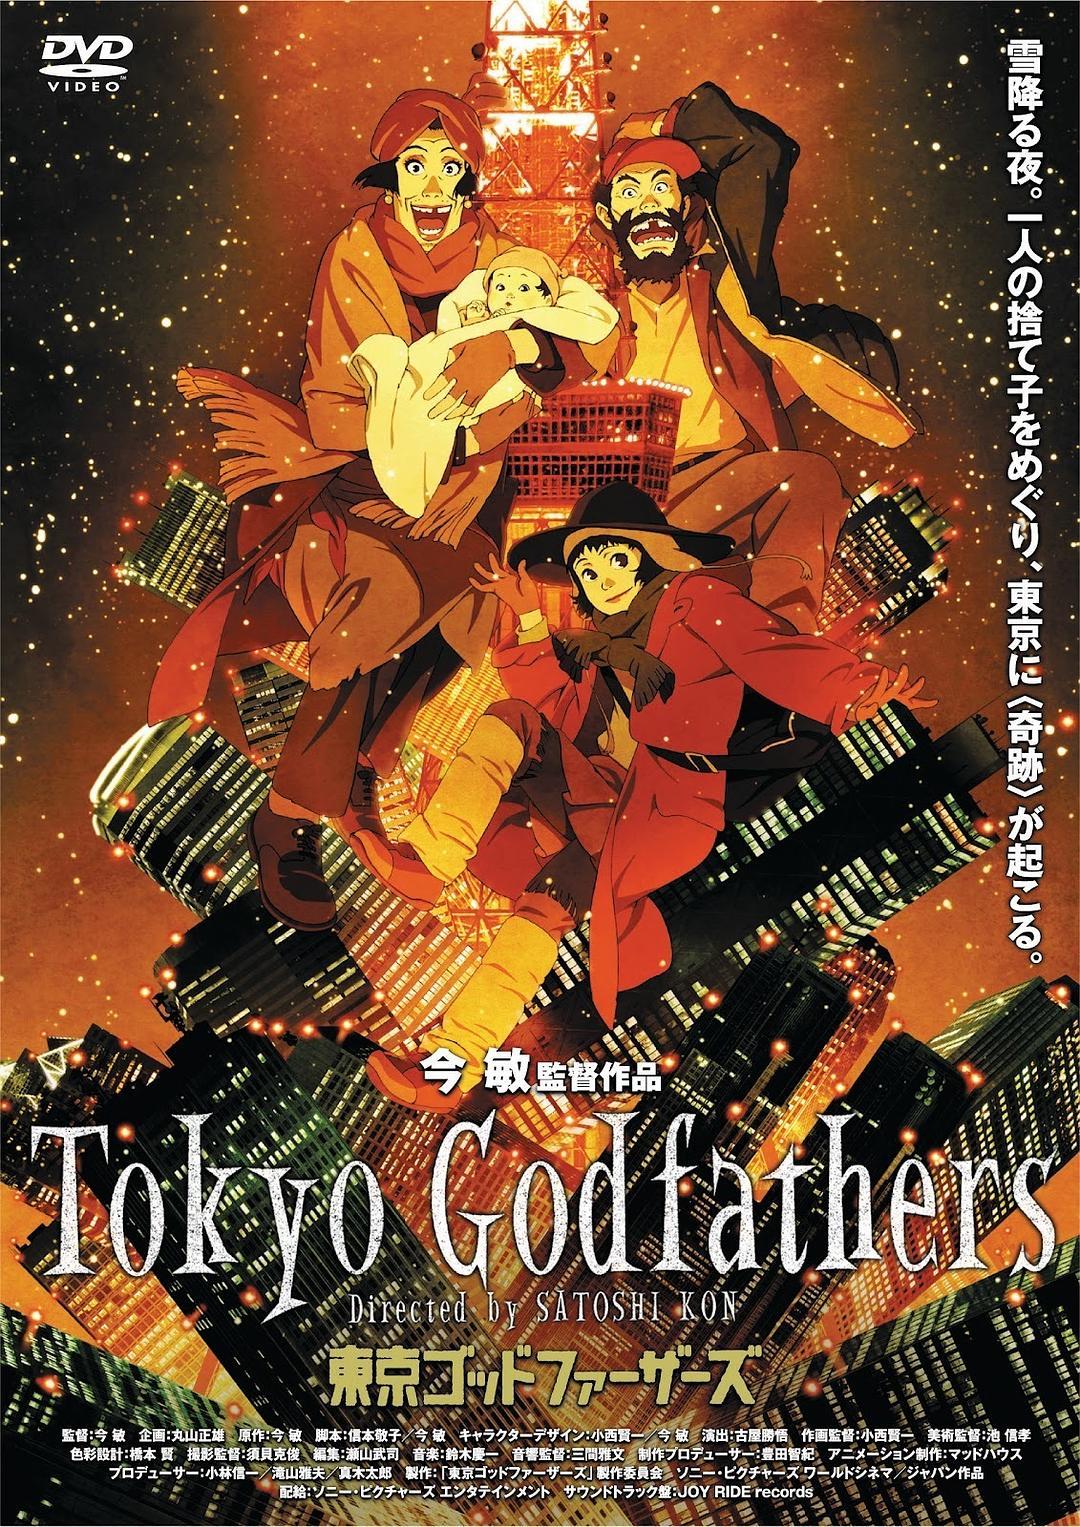 Ver Tokyo Godfathers (2003) Online - CUEVANA 3